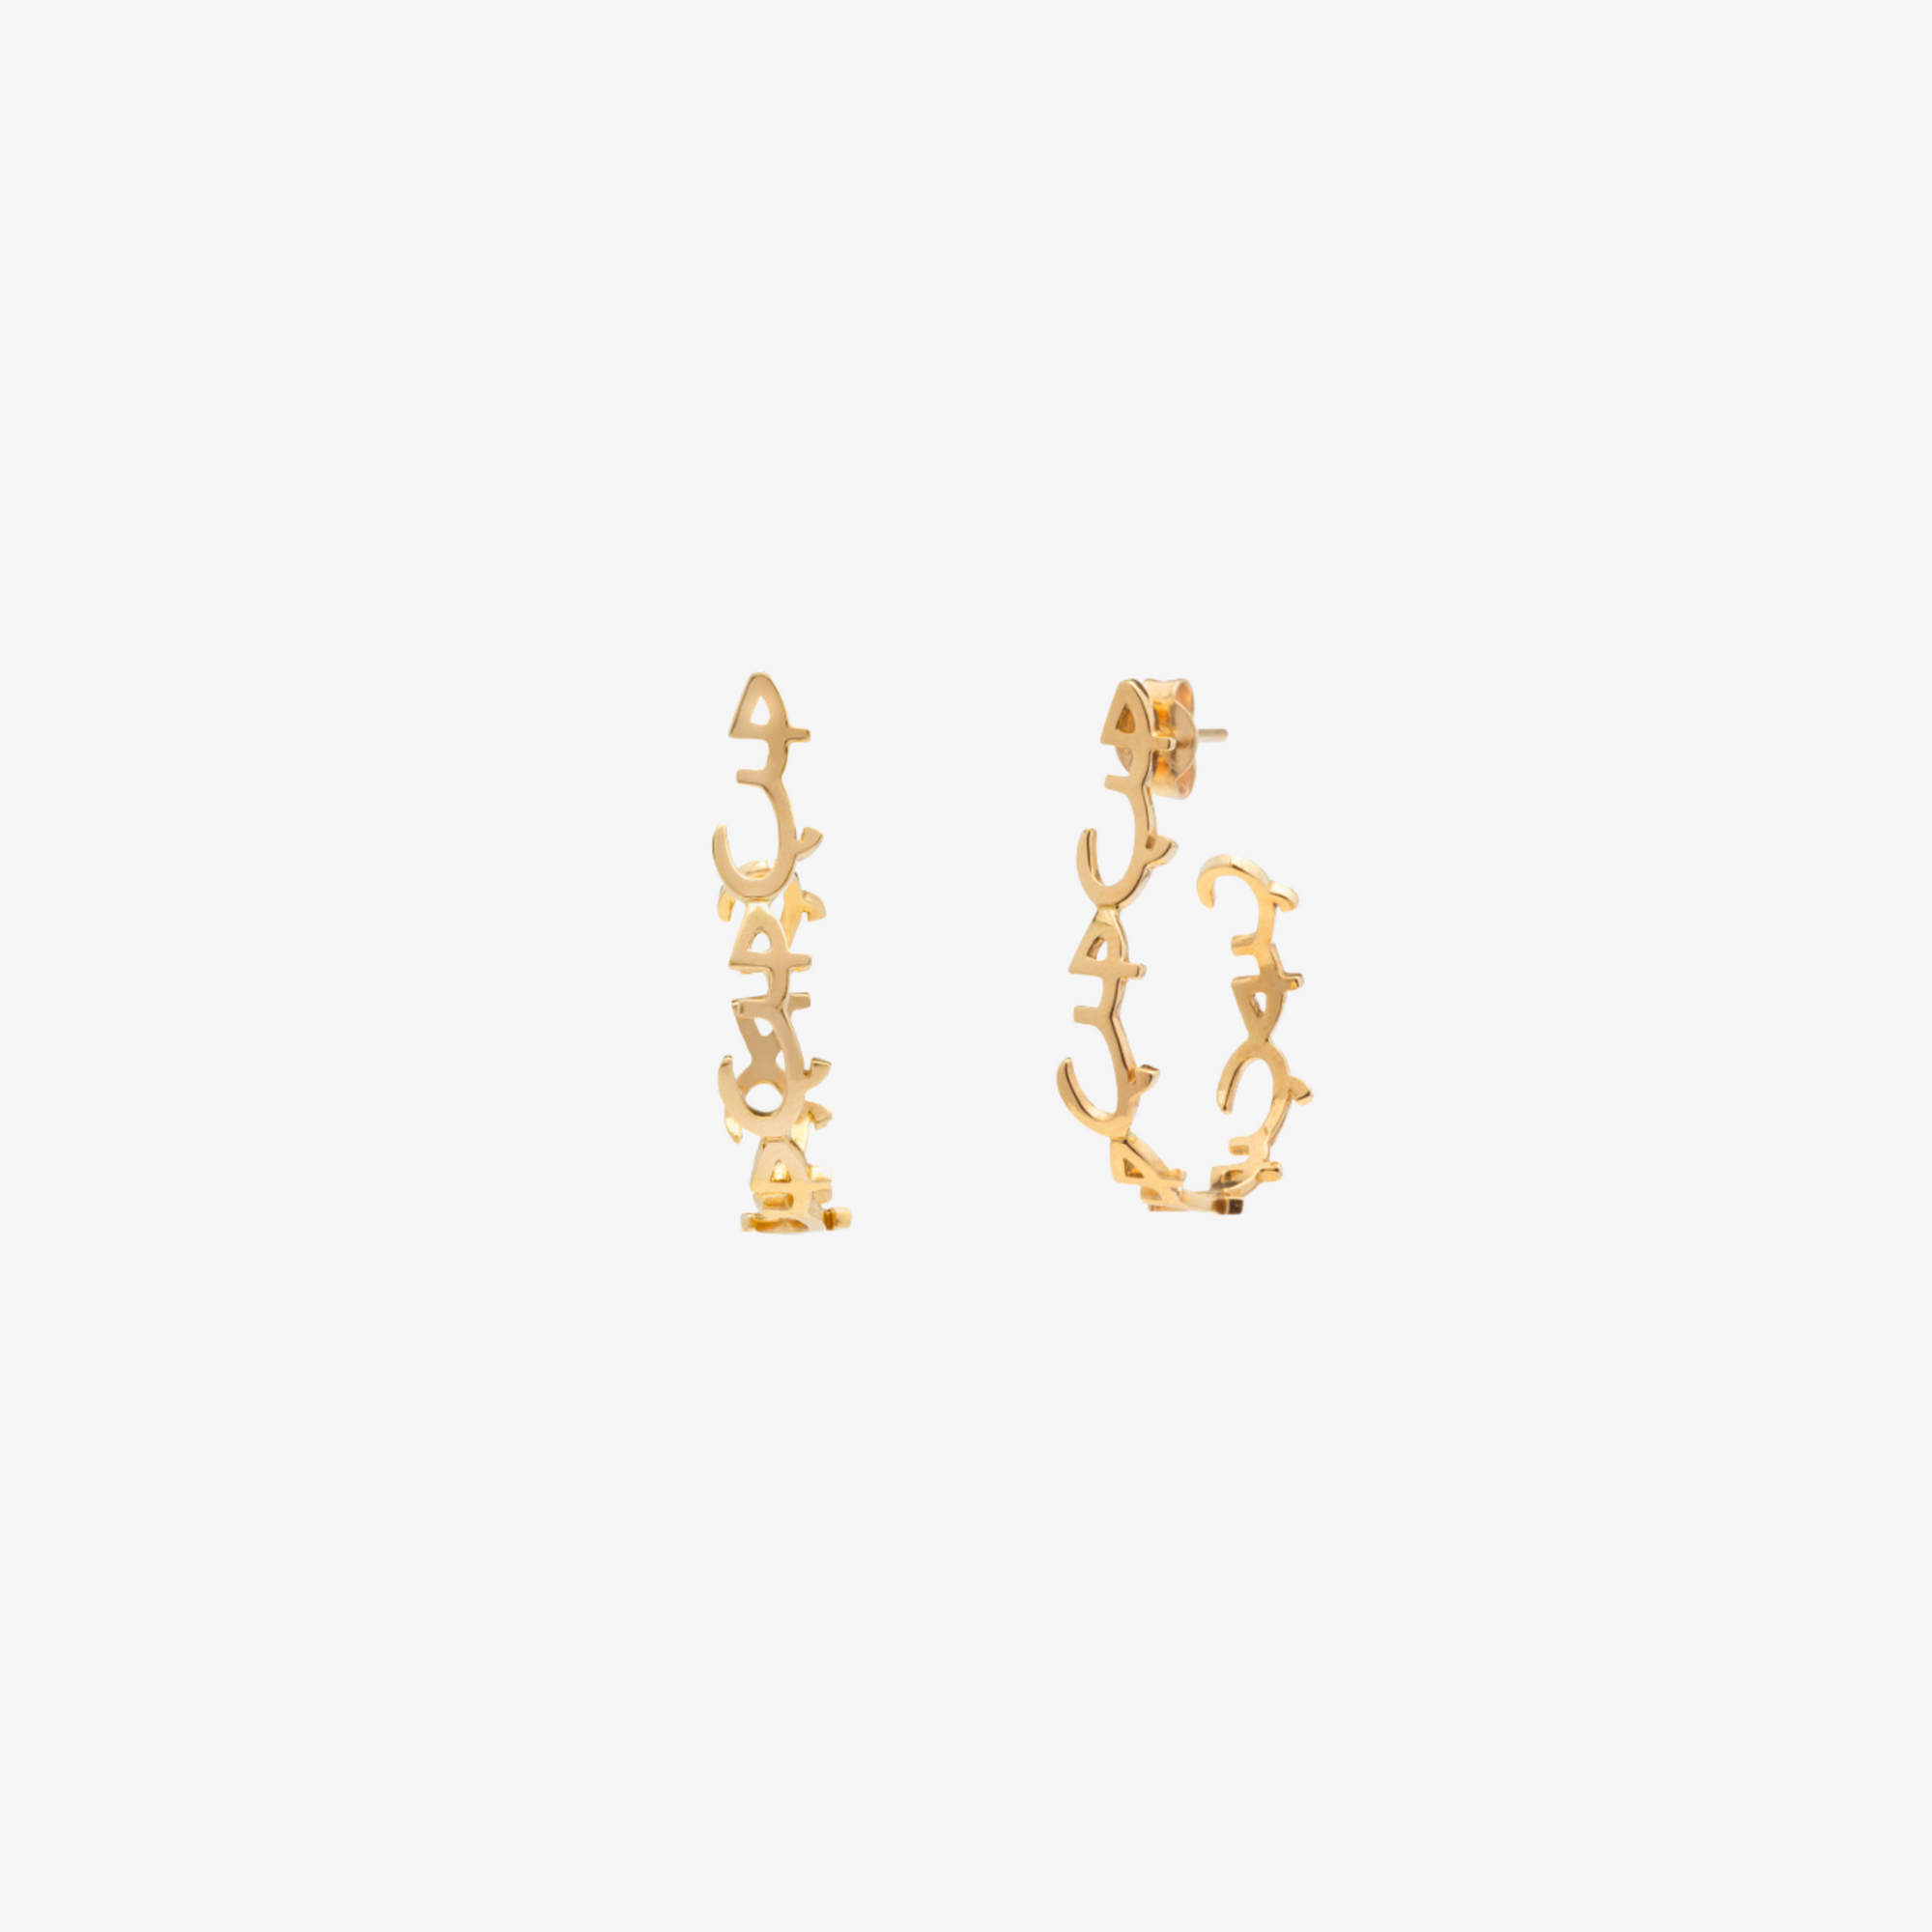 HOBB — 18K Gold "Love" Earrings